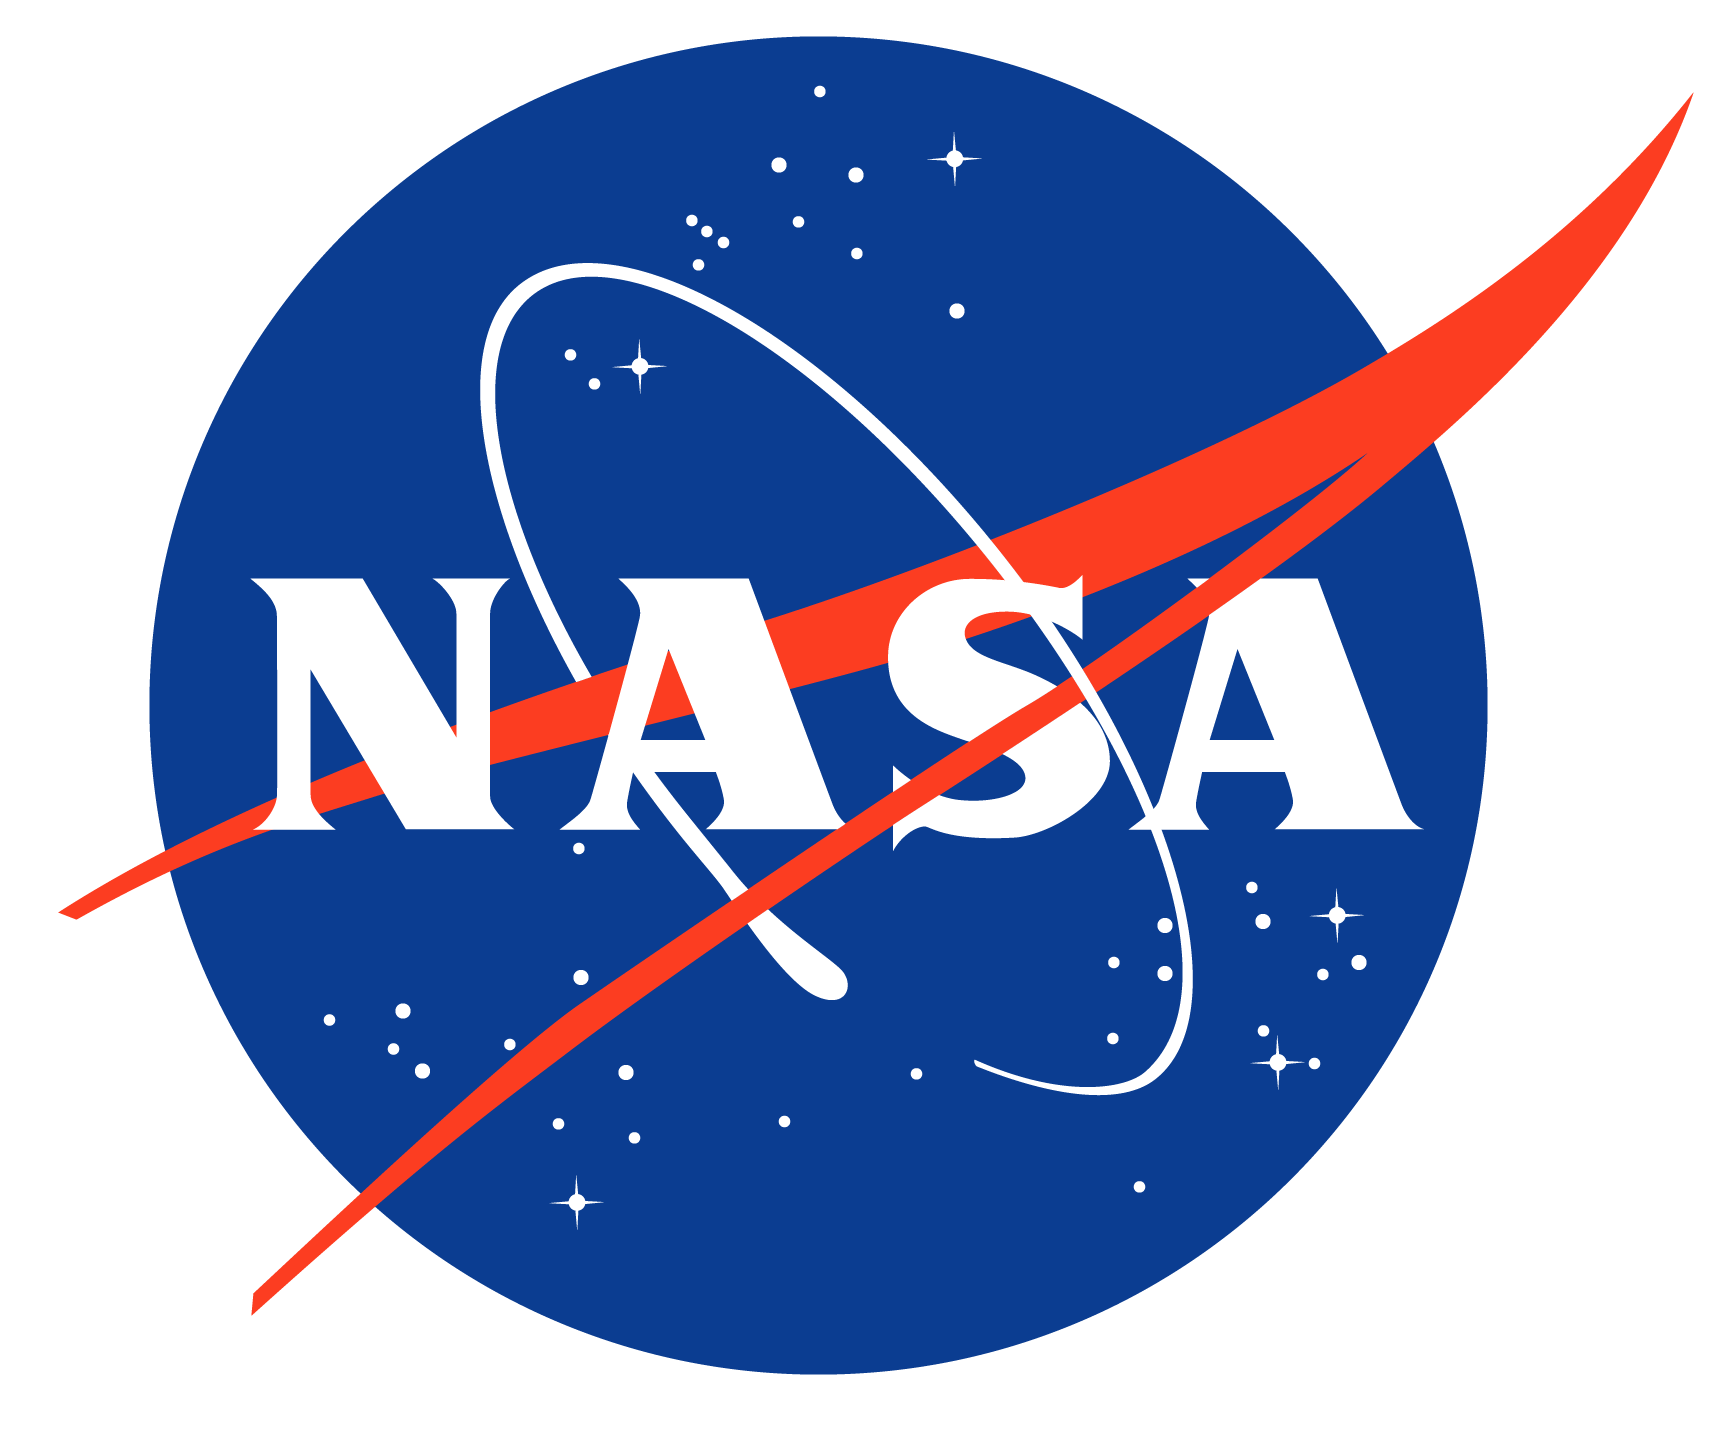 NASA Meatball Logo